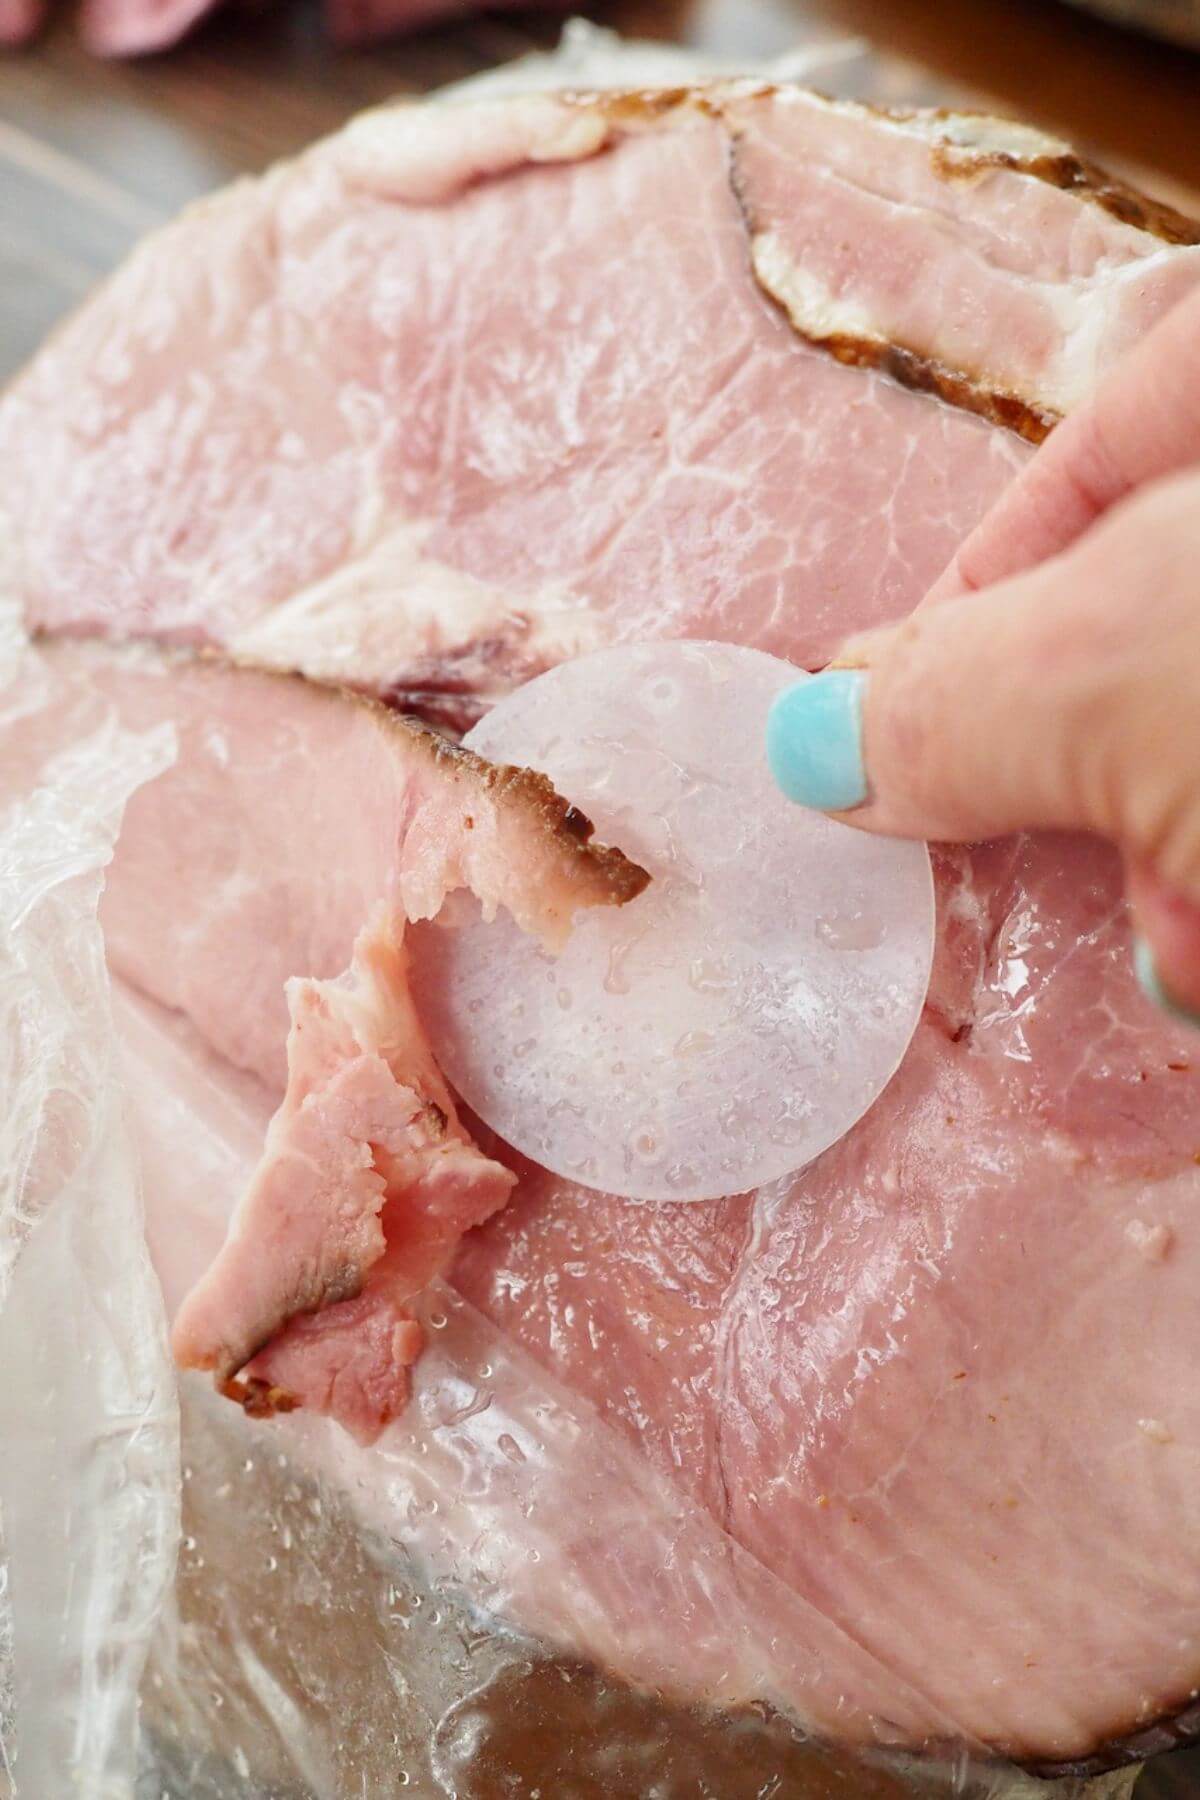 Removing plastic disc covering the ham bone.